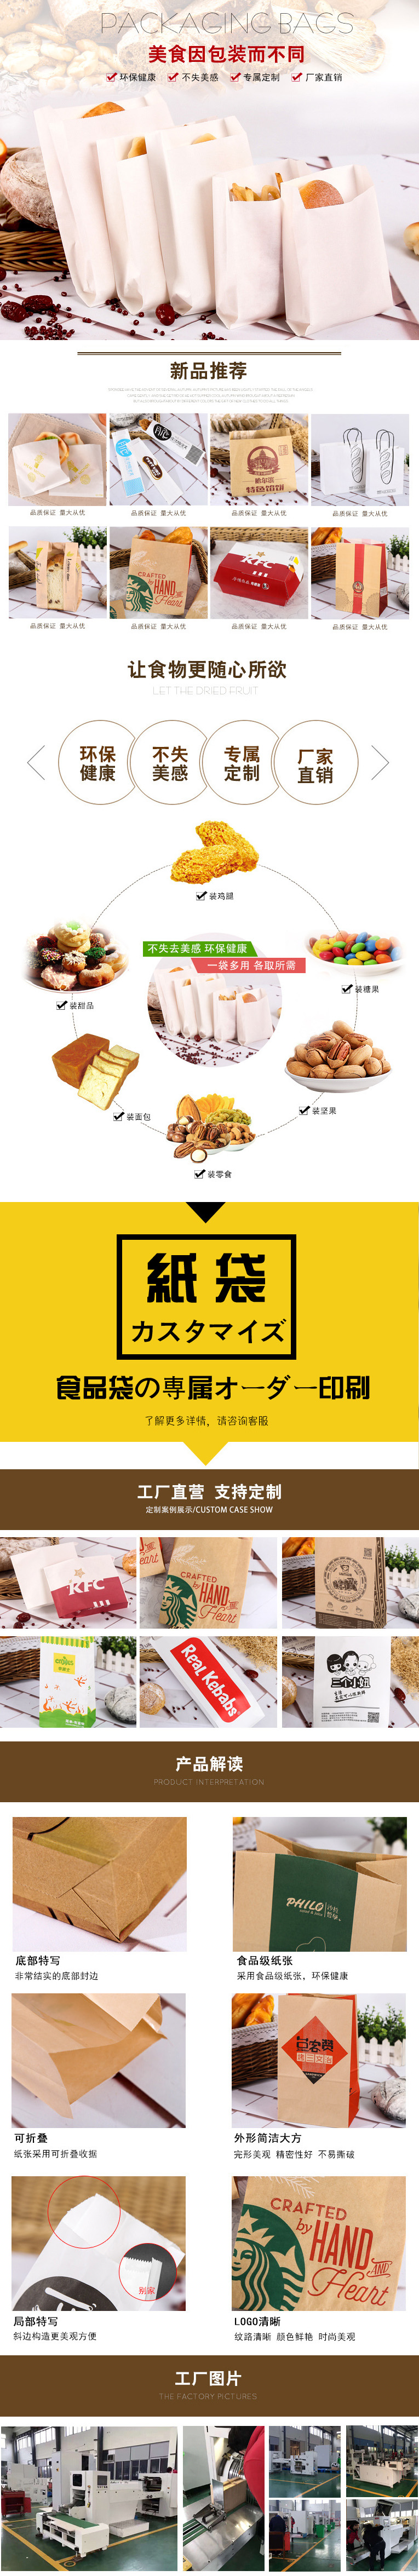 食品袋详情-01.jpg